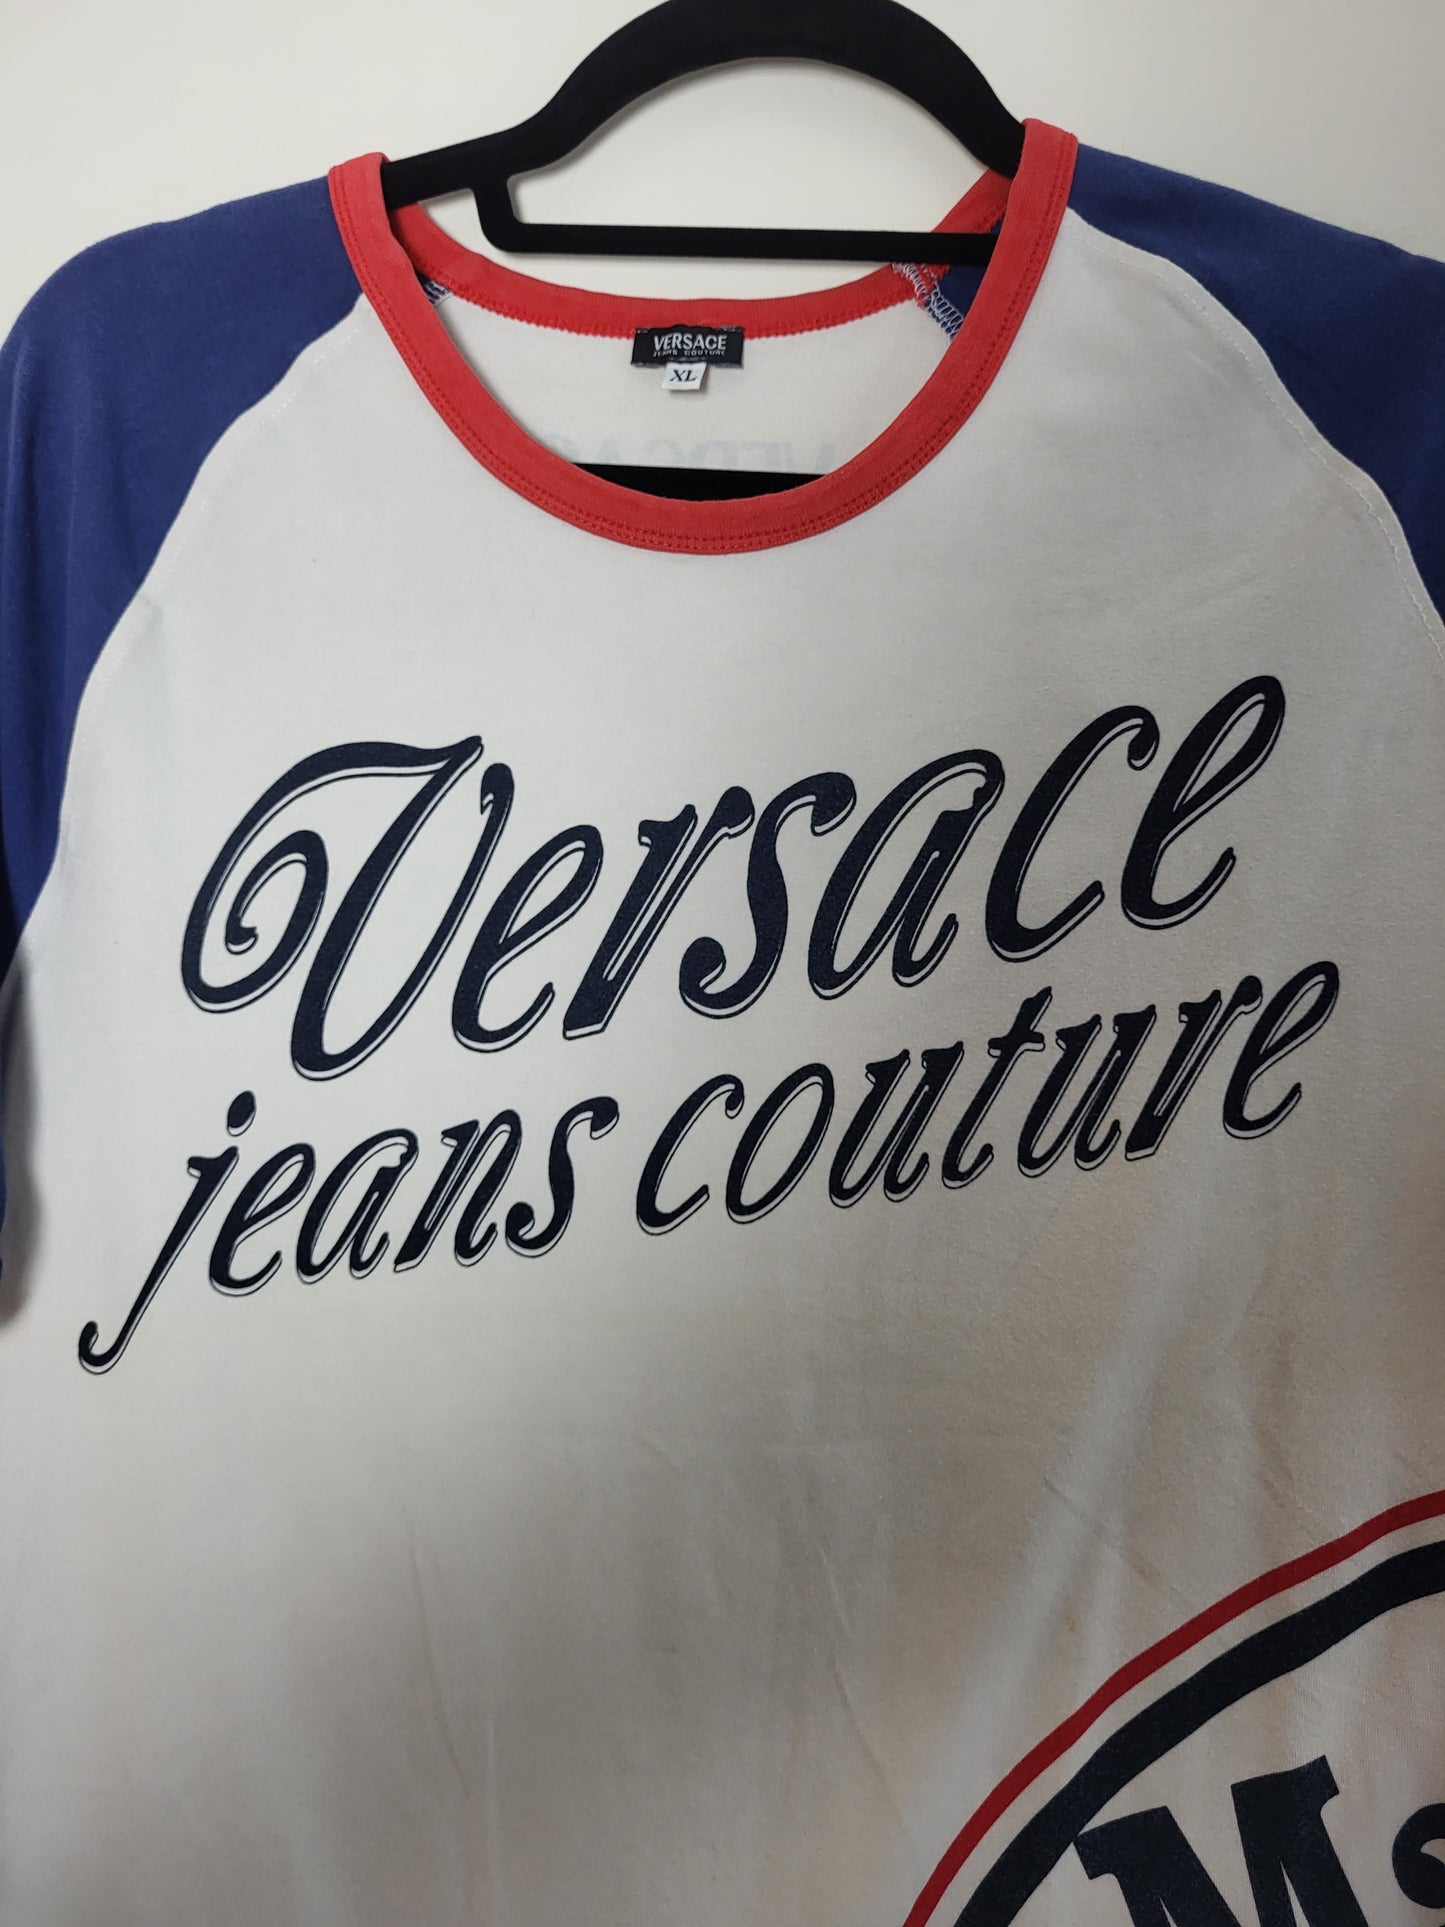 VERSACE Jeans Couture - T-Shirt - Exklusiv - Print - Damen - L/XL